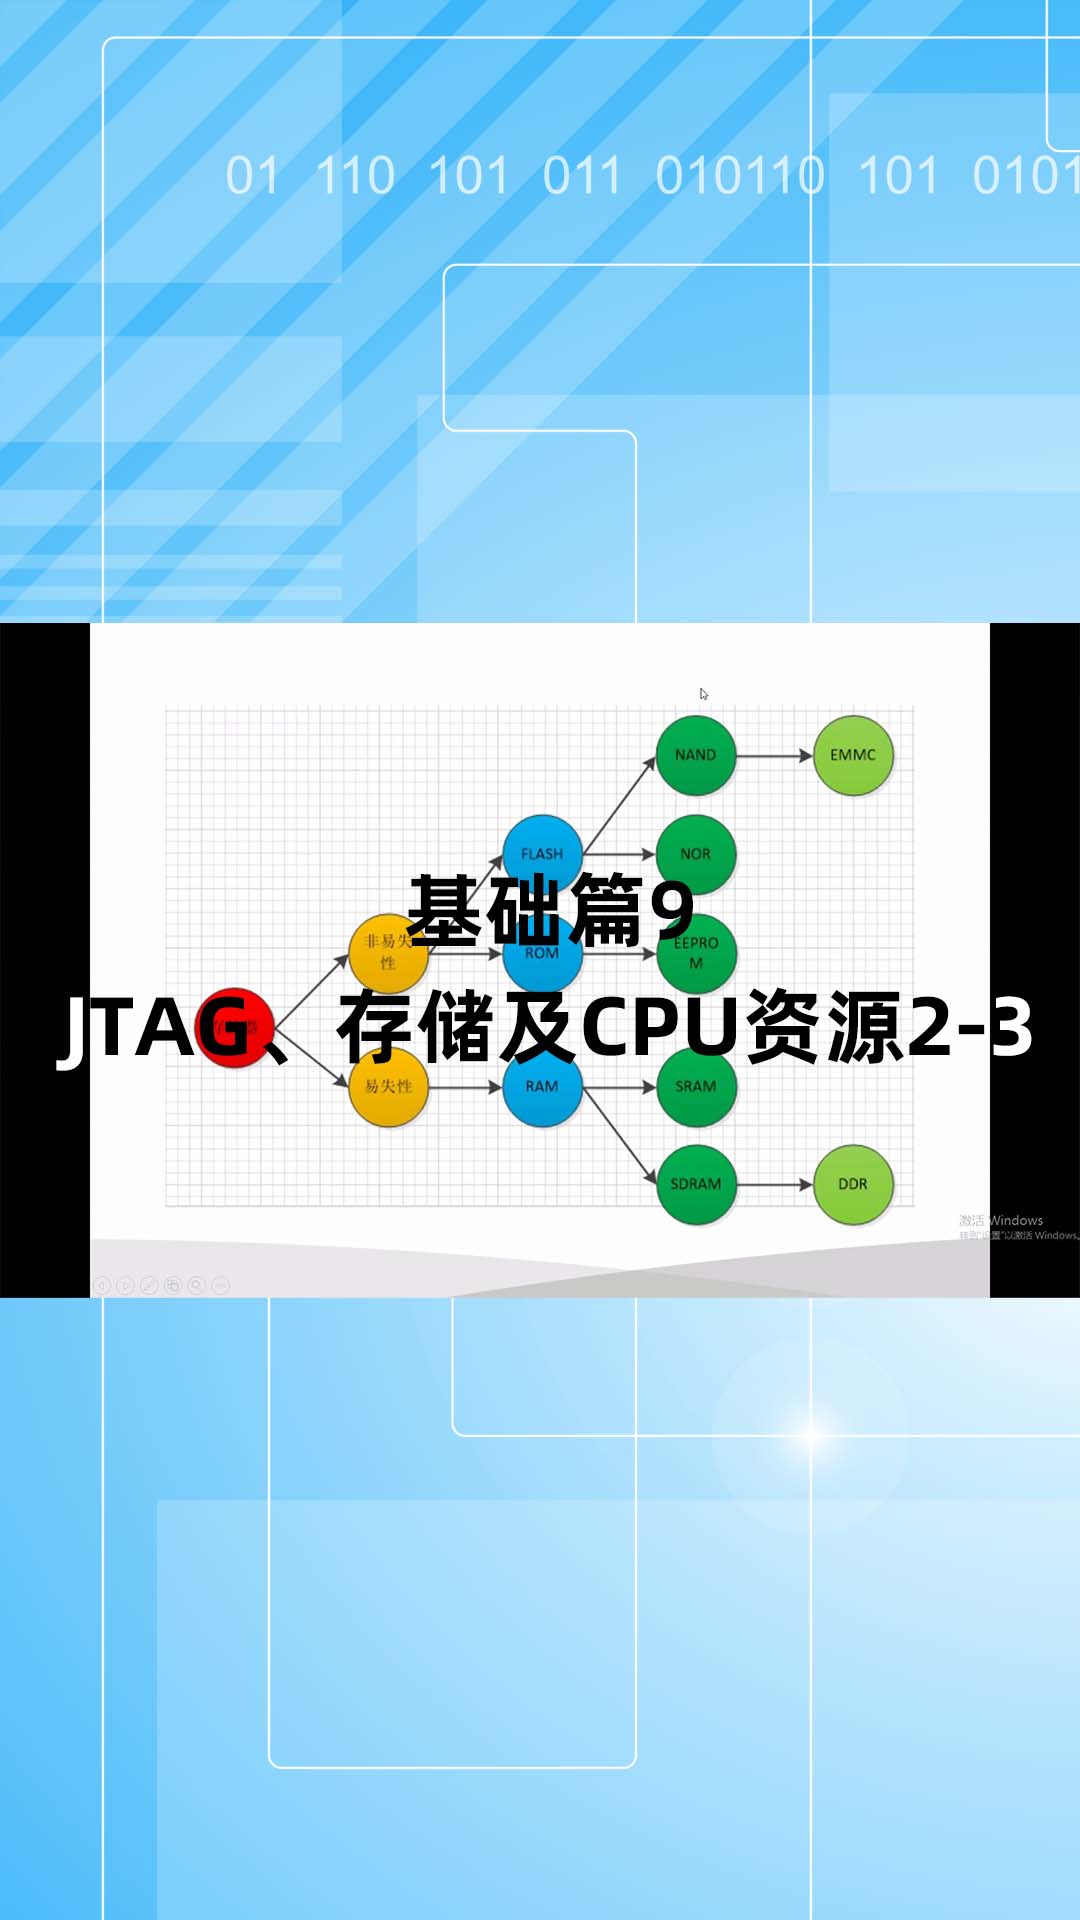 基础篇9 - 1.9_JTAG、存储及CPU资源2